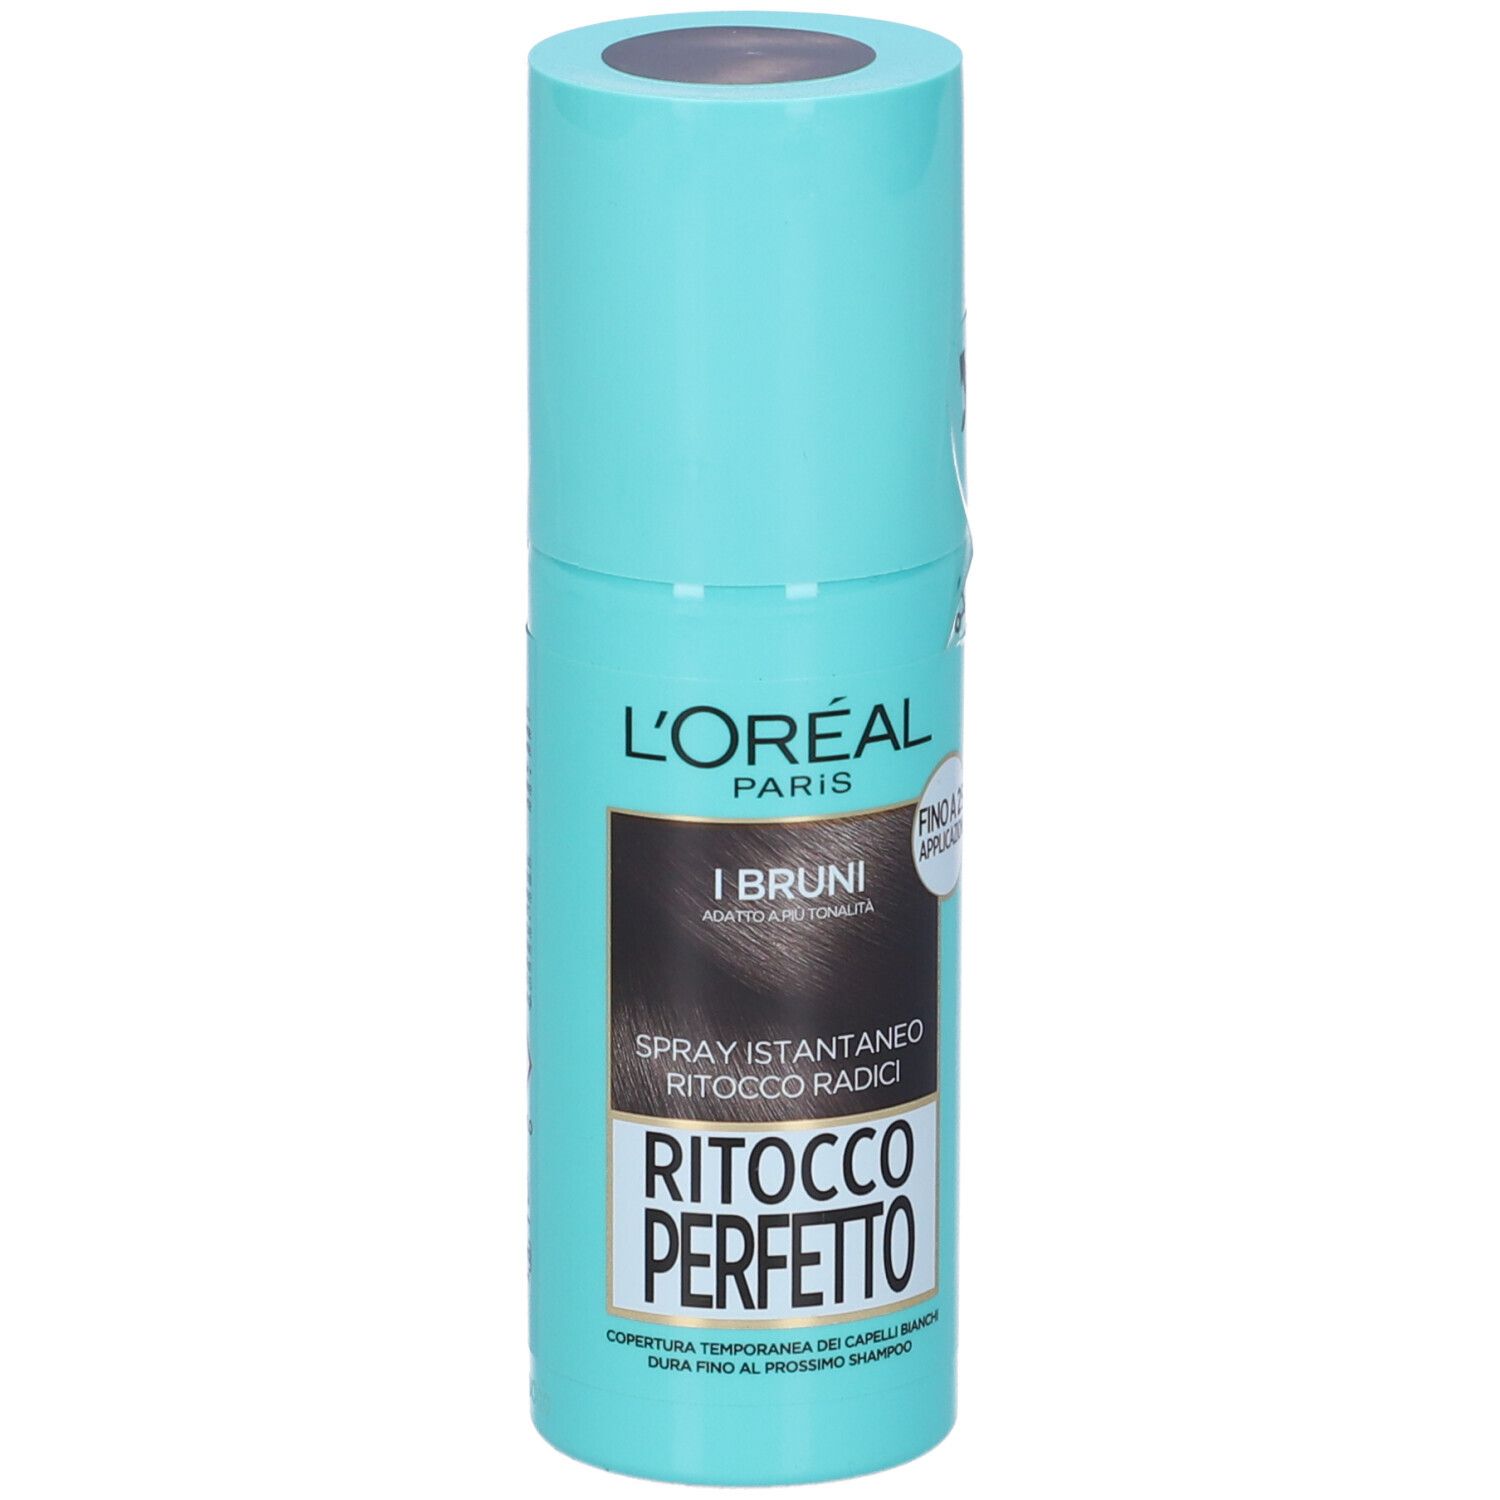 L'Oréal Paris Ritocco Perfetto, Spray Istantaneo Correttore per Radici e Capelli Bianchi, Colore: Bruno, 75 ml